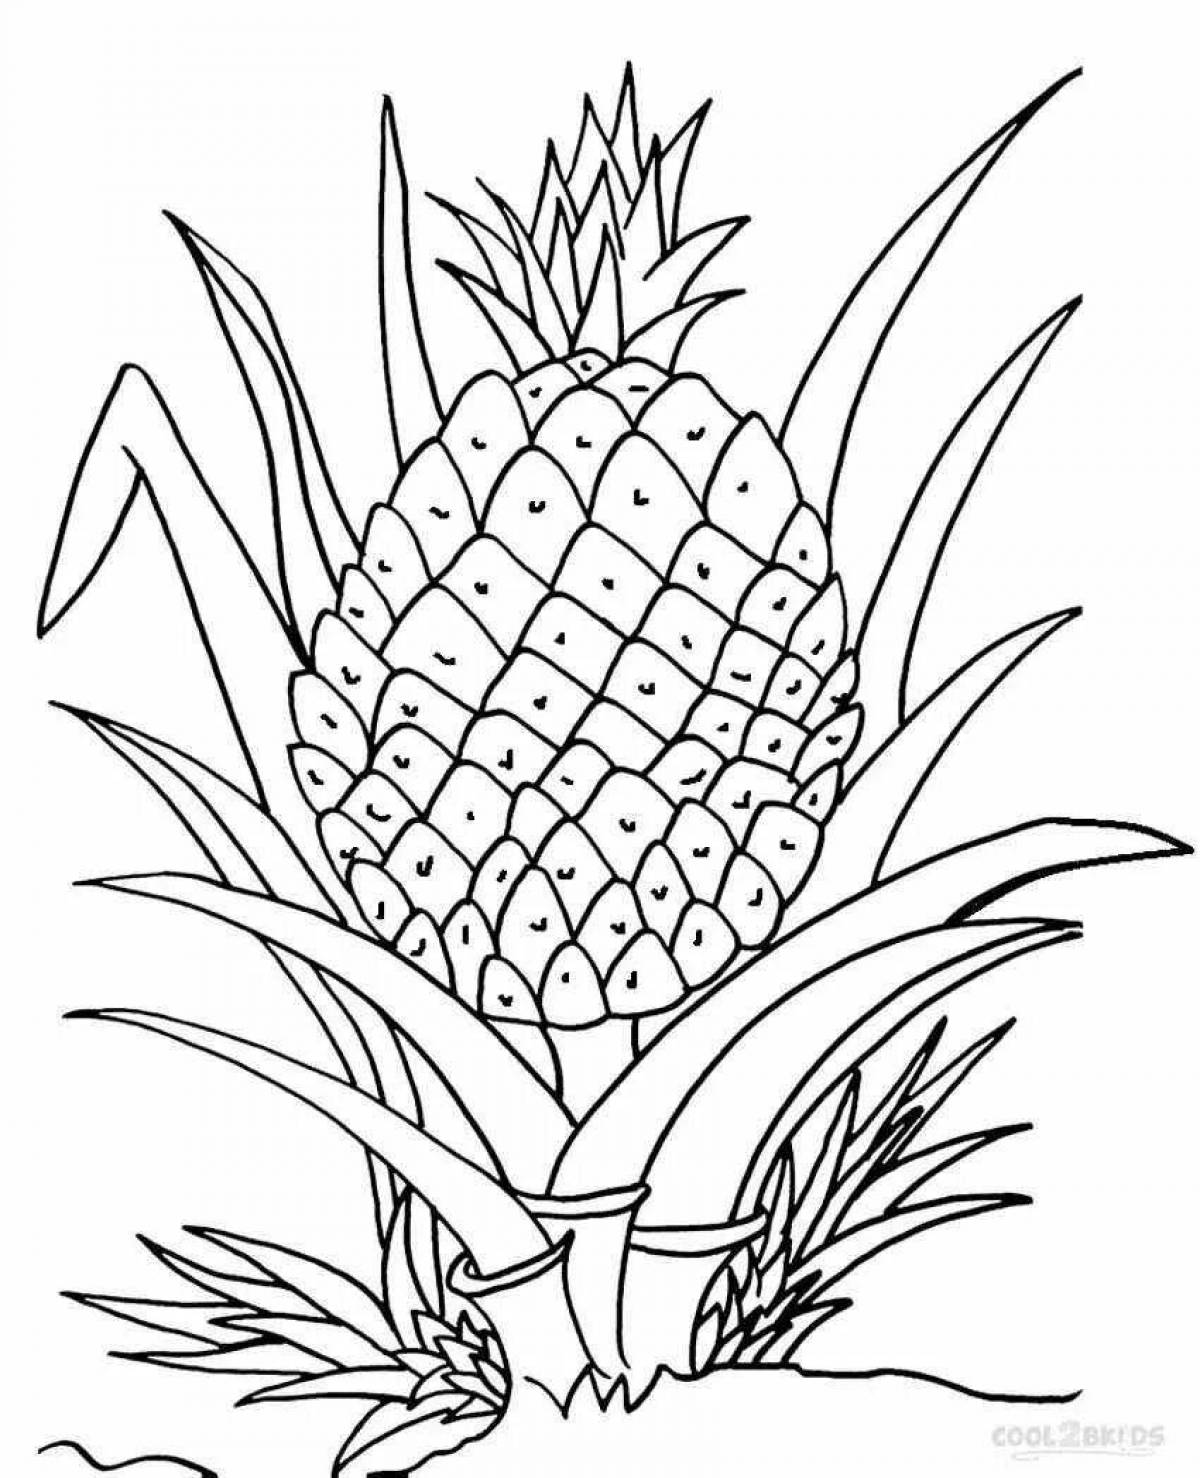 Pineapple for kids #16